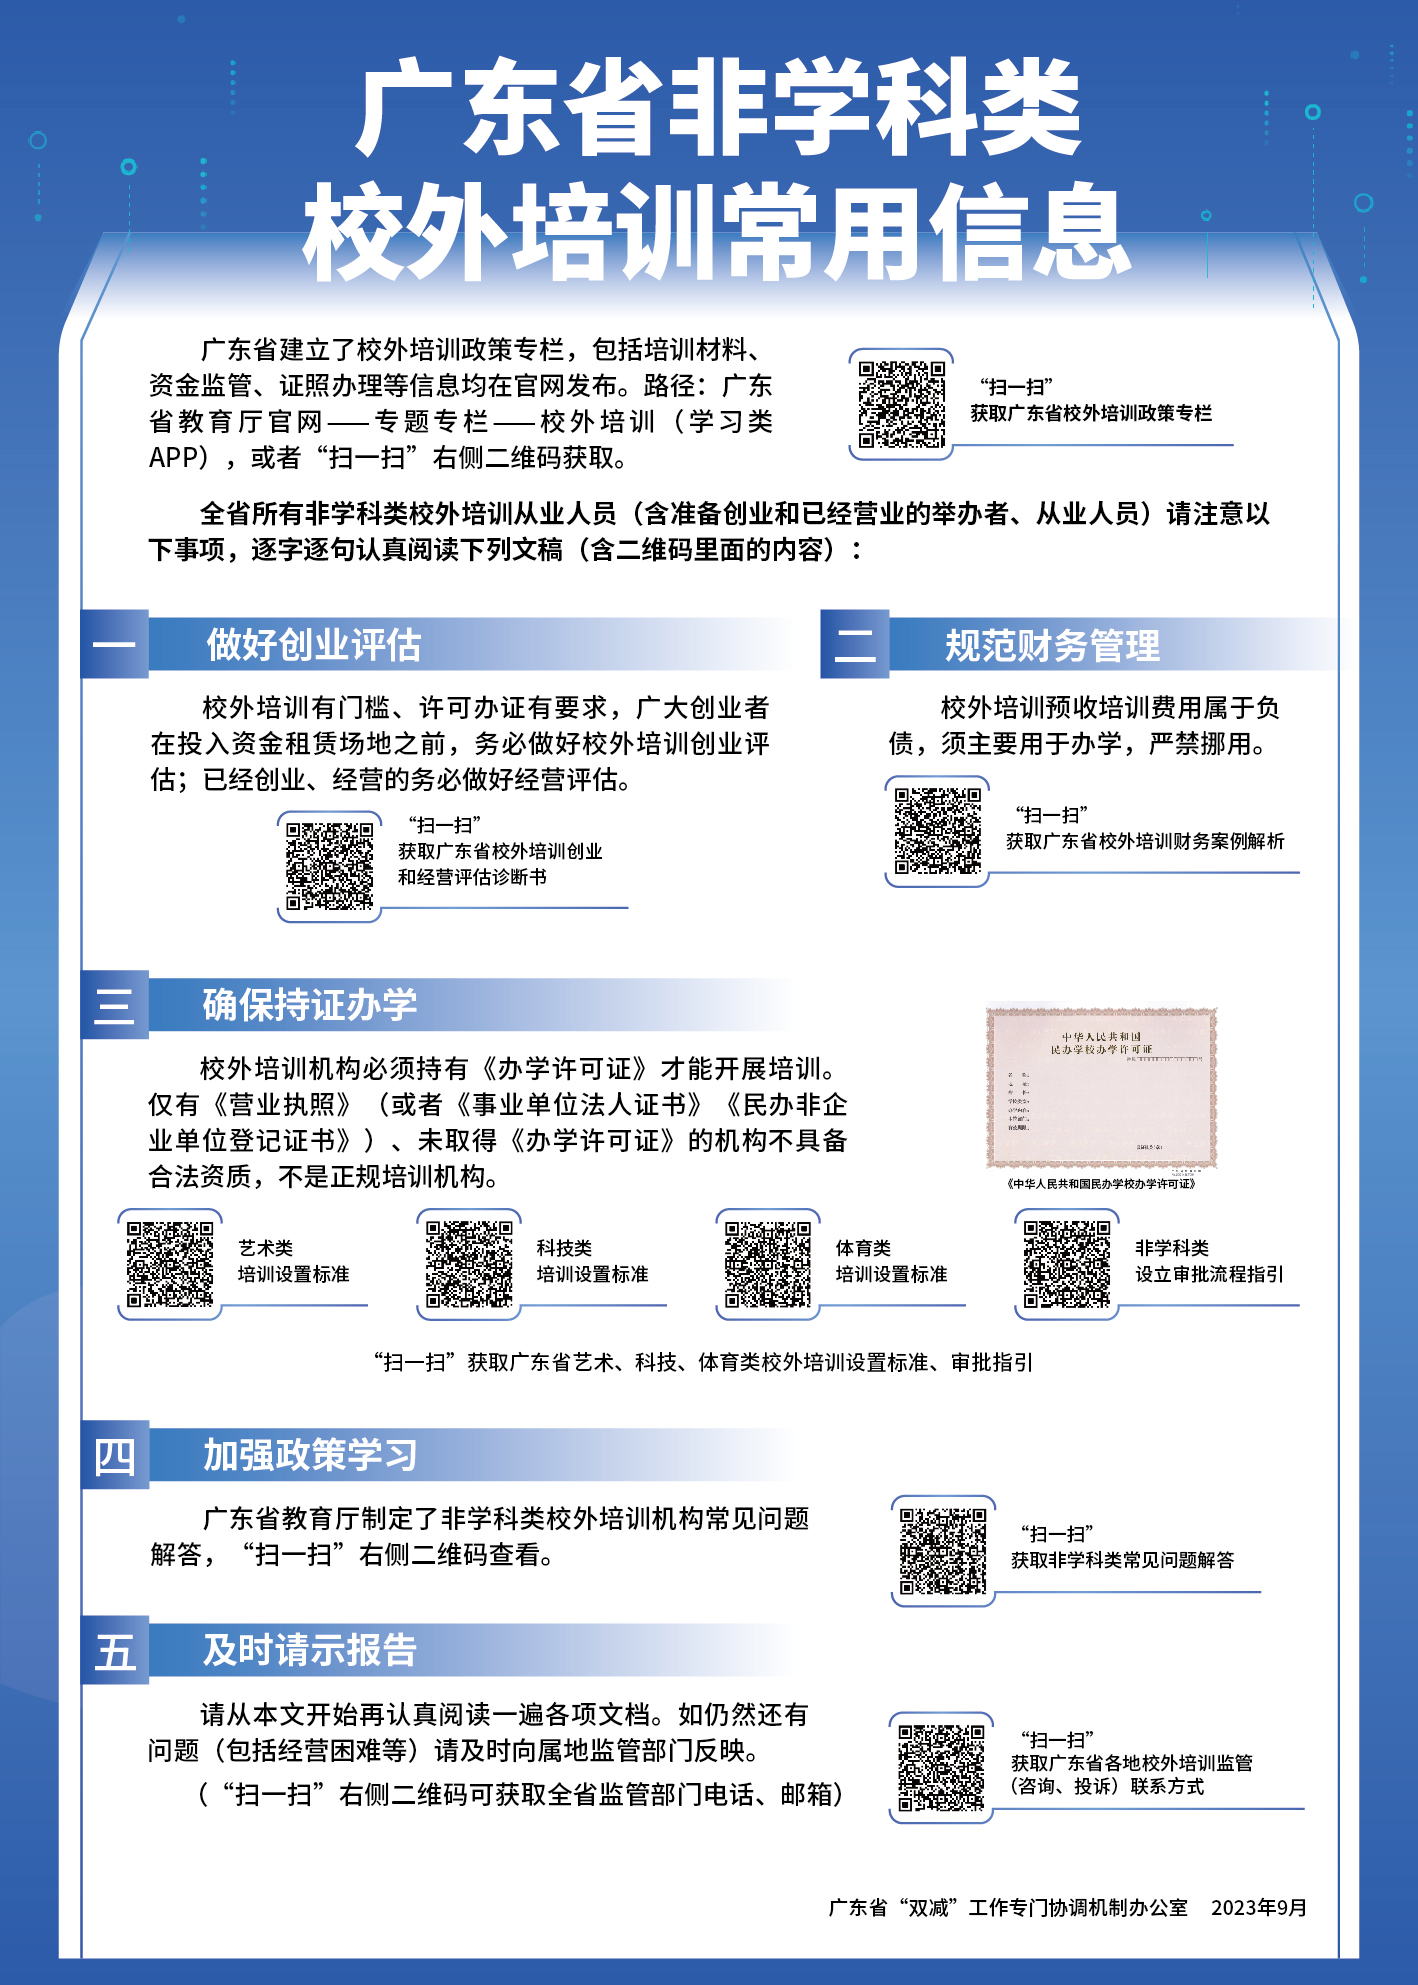 附件3.广东省非学科类校外培训常用信息（机构张贴）.jpg